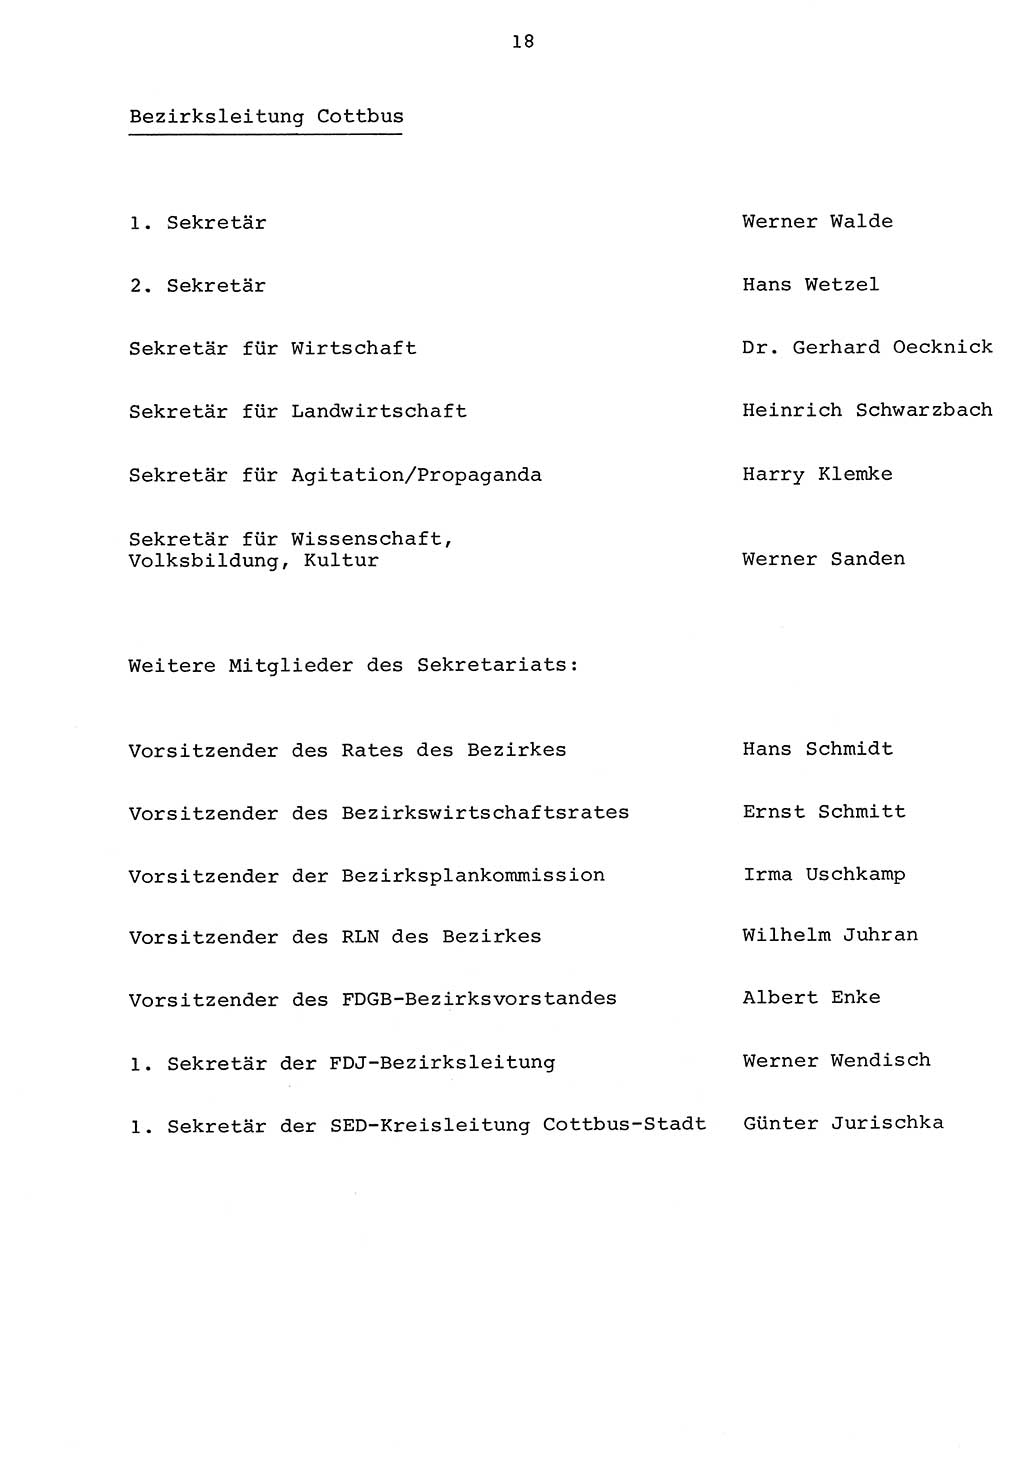 Parteiapparat der Deutschen Demokratischen Republik (DDR) 1970, Seite 18 (Parteiapp. DDR 1970, S. 18)